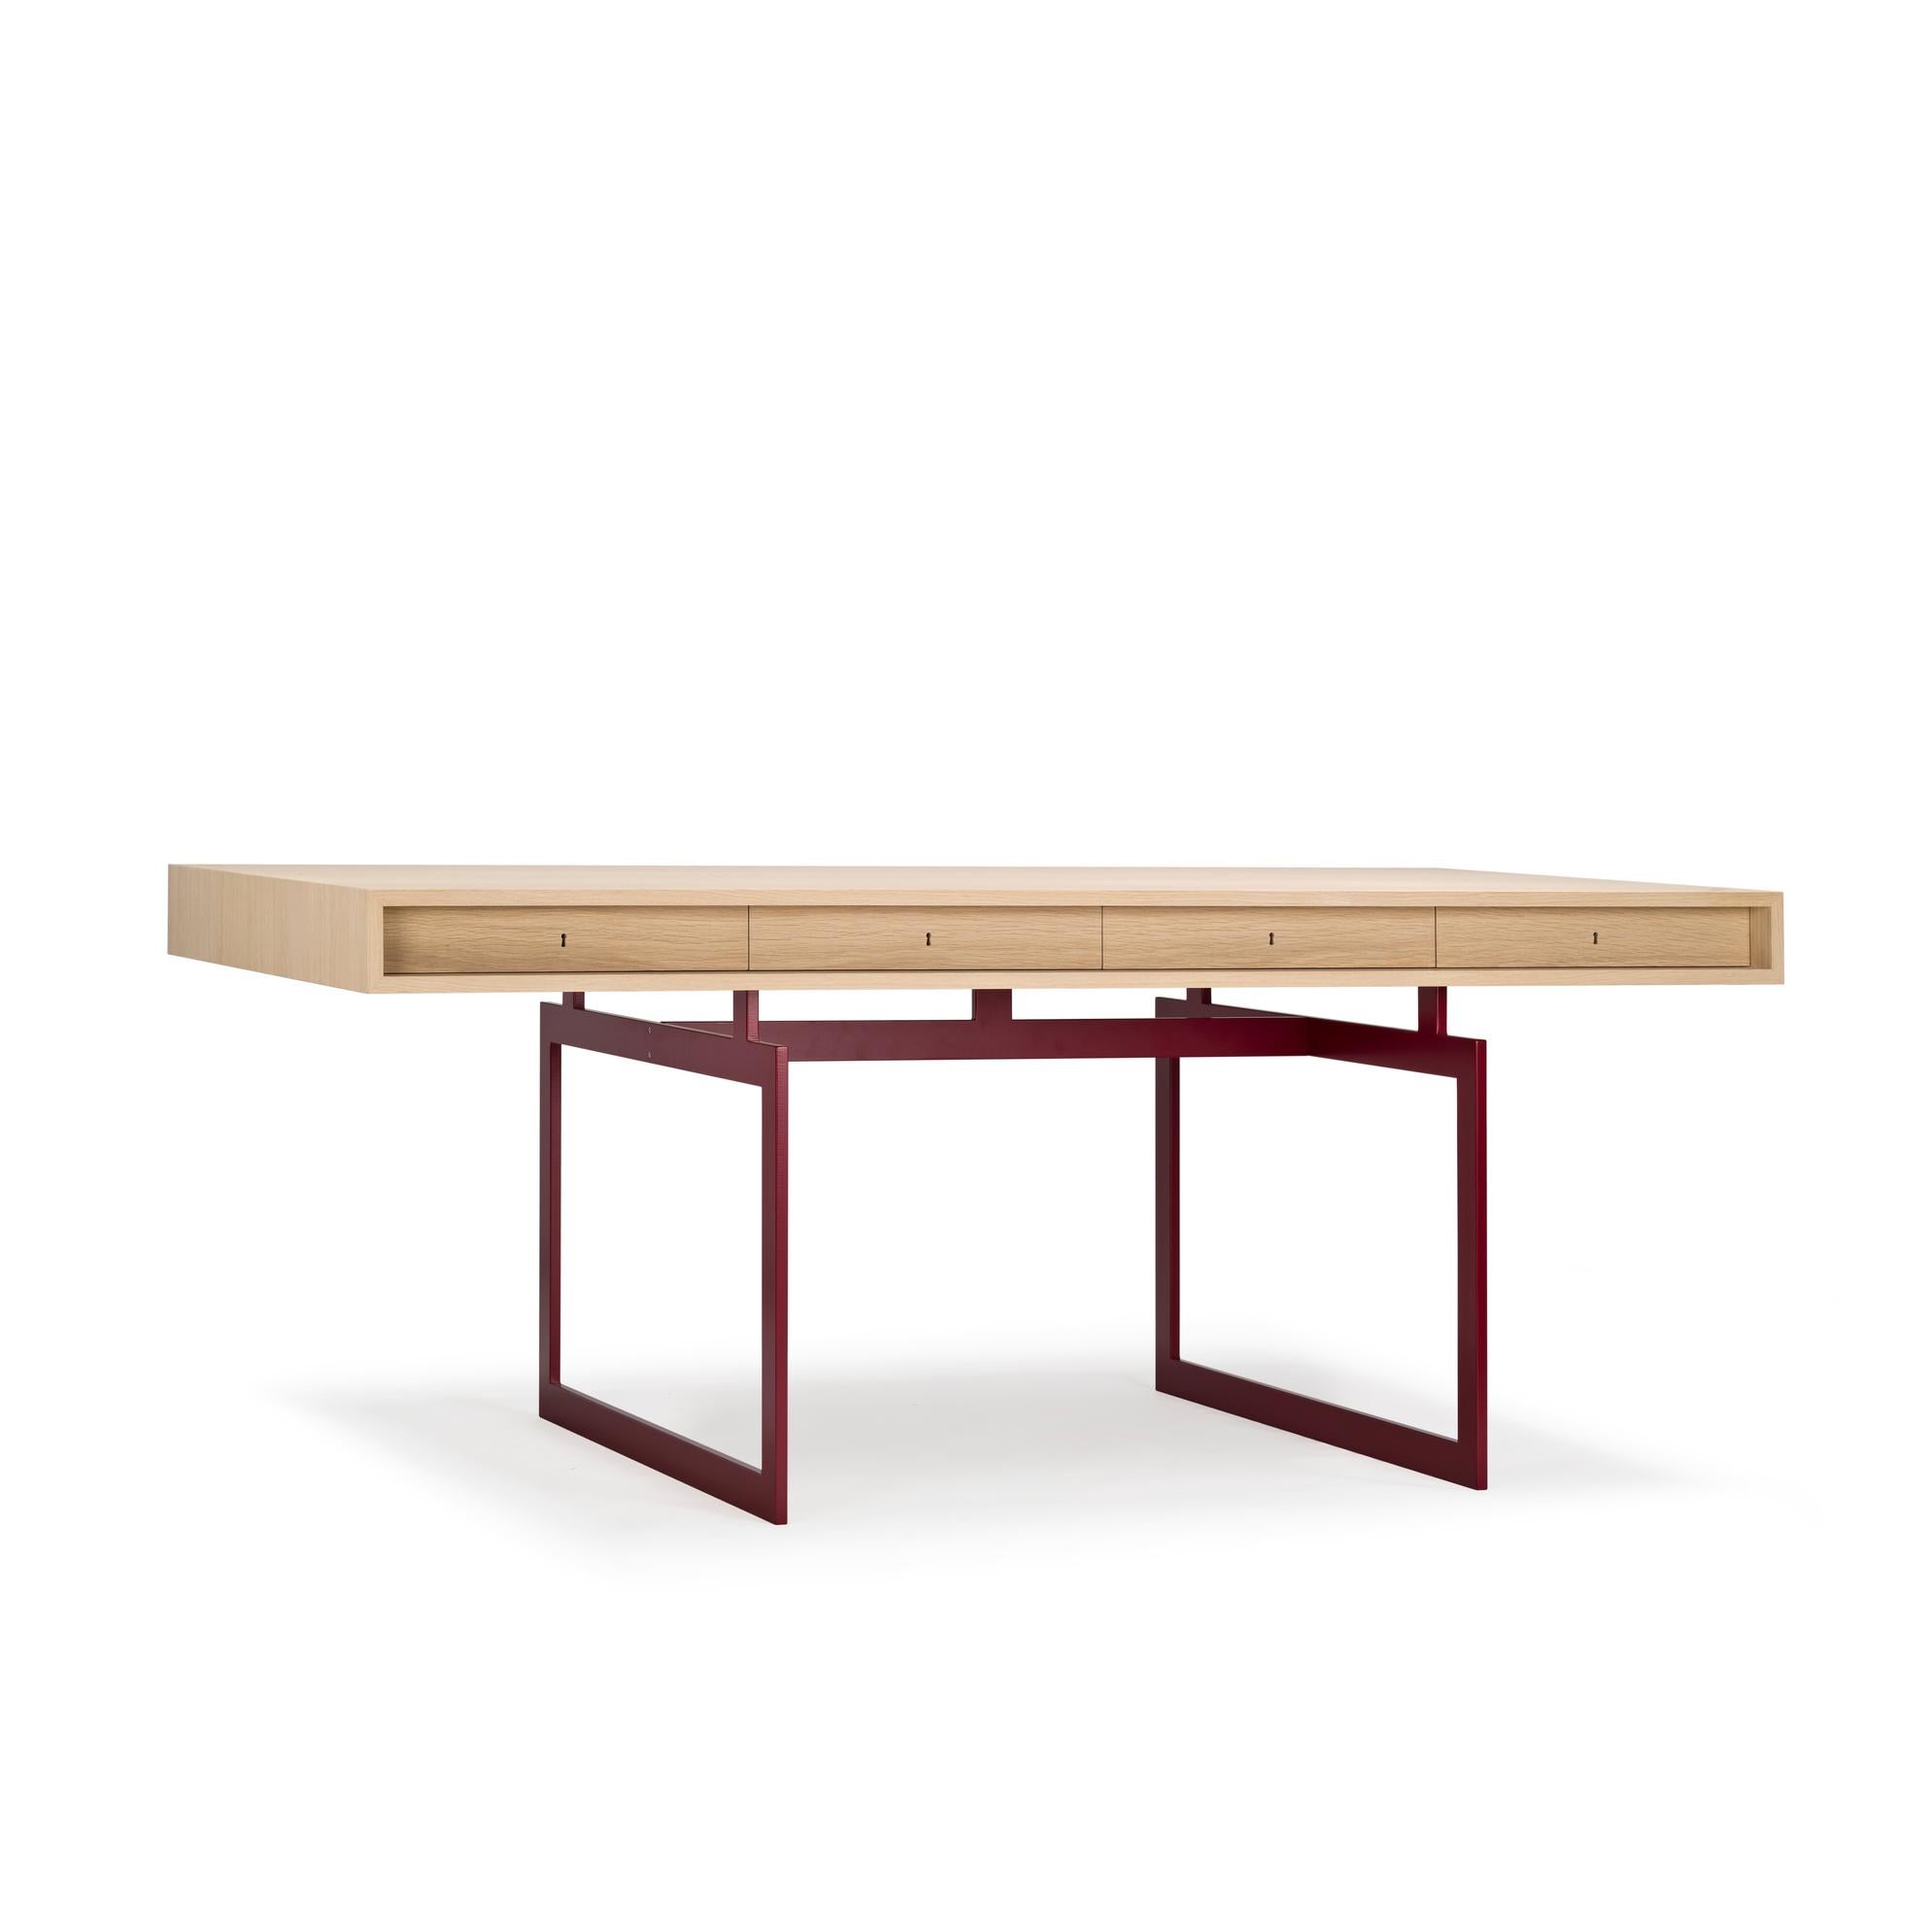 Tisch, entworfen von Bodil Kjær im Jahr 1959. 

Wir sind stolz darauf, unseren ersten Entwurf eines dänischen Designers zu präsentieren. In diesem Fall ist es die dänische Architektin, Professorin und Designerin Bodil Kjær. Der ikonische